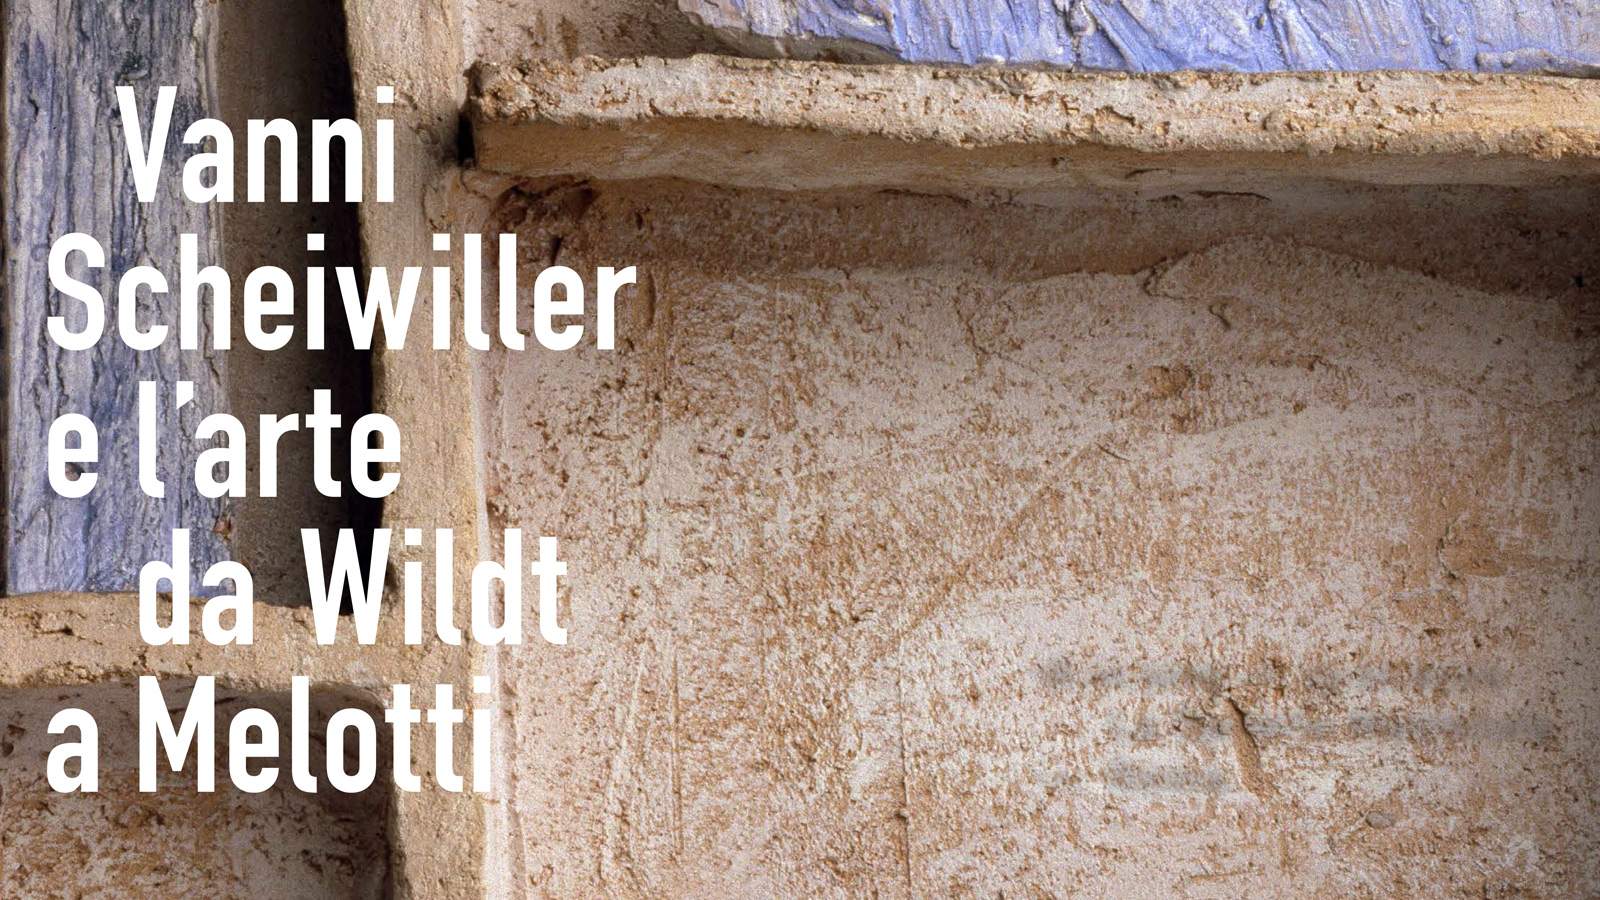 Exposition à Rome consacrée à Vanni Scheiwiller, journaliste et critique d'art qui était le petit-fils d'Adolfo Wildt.